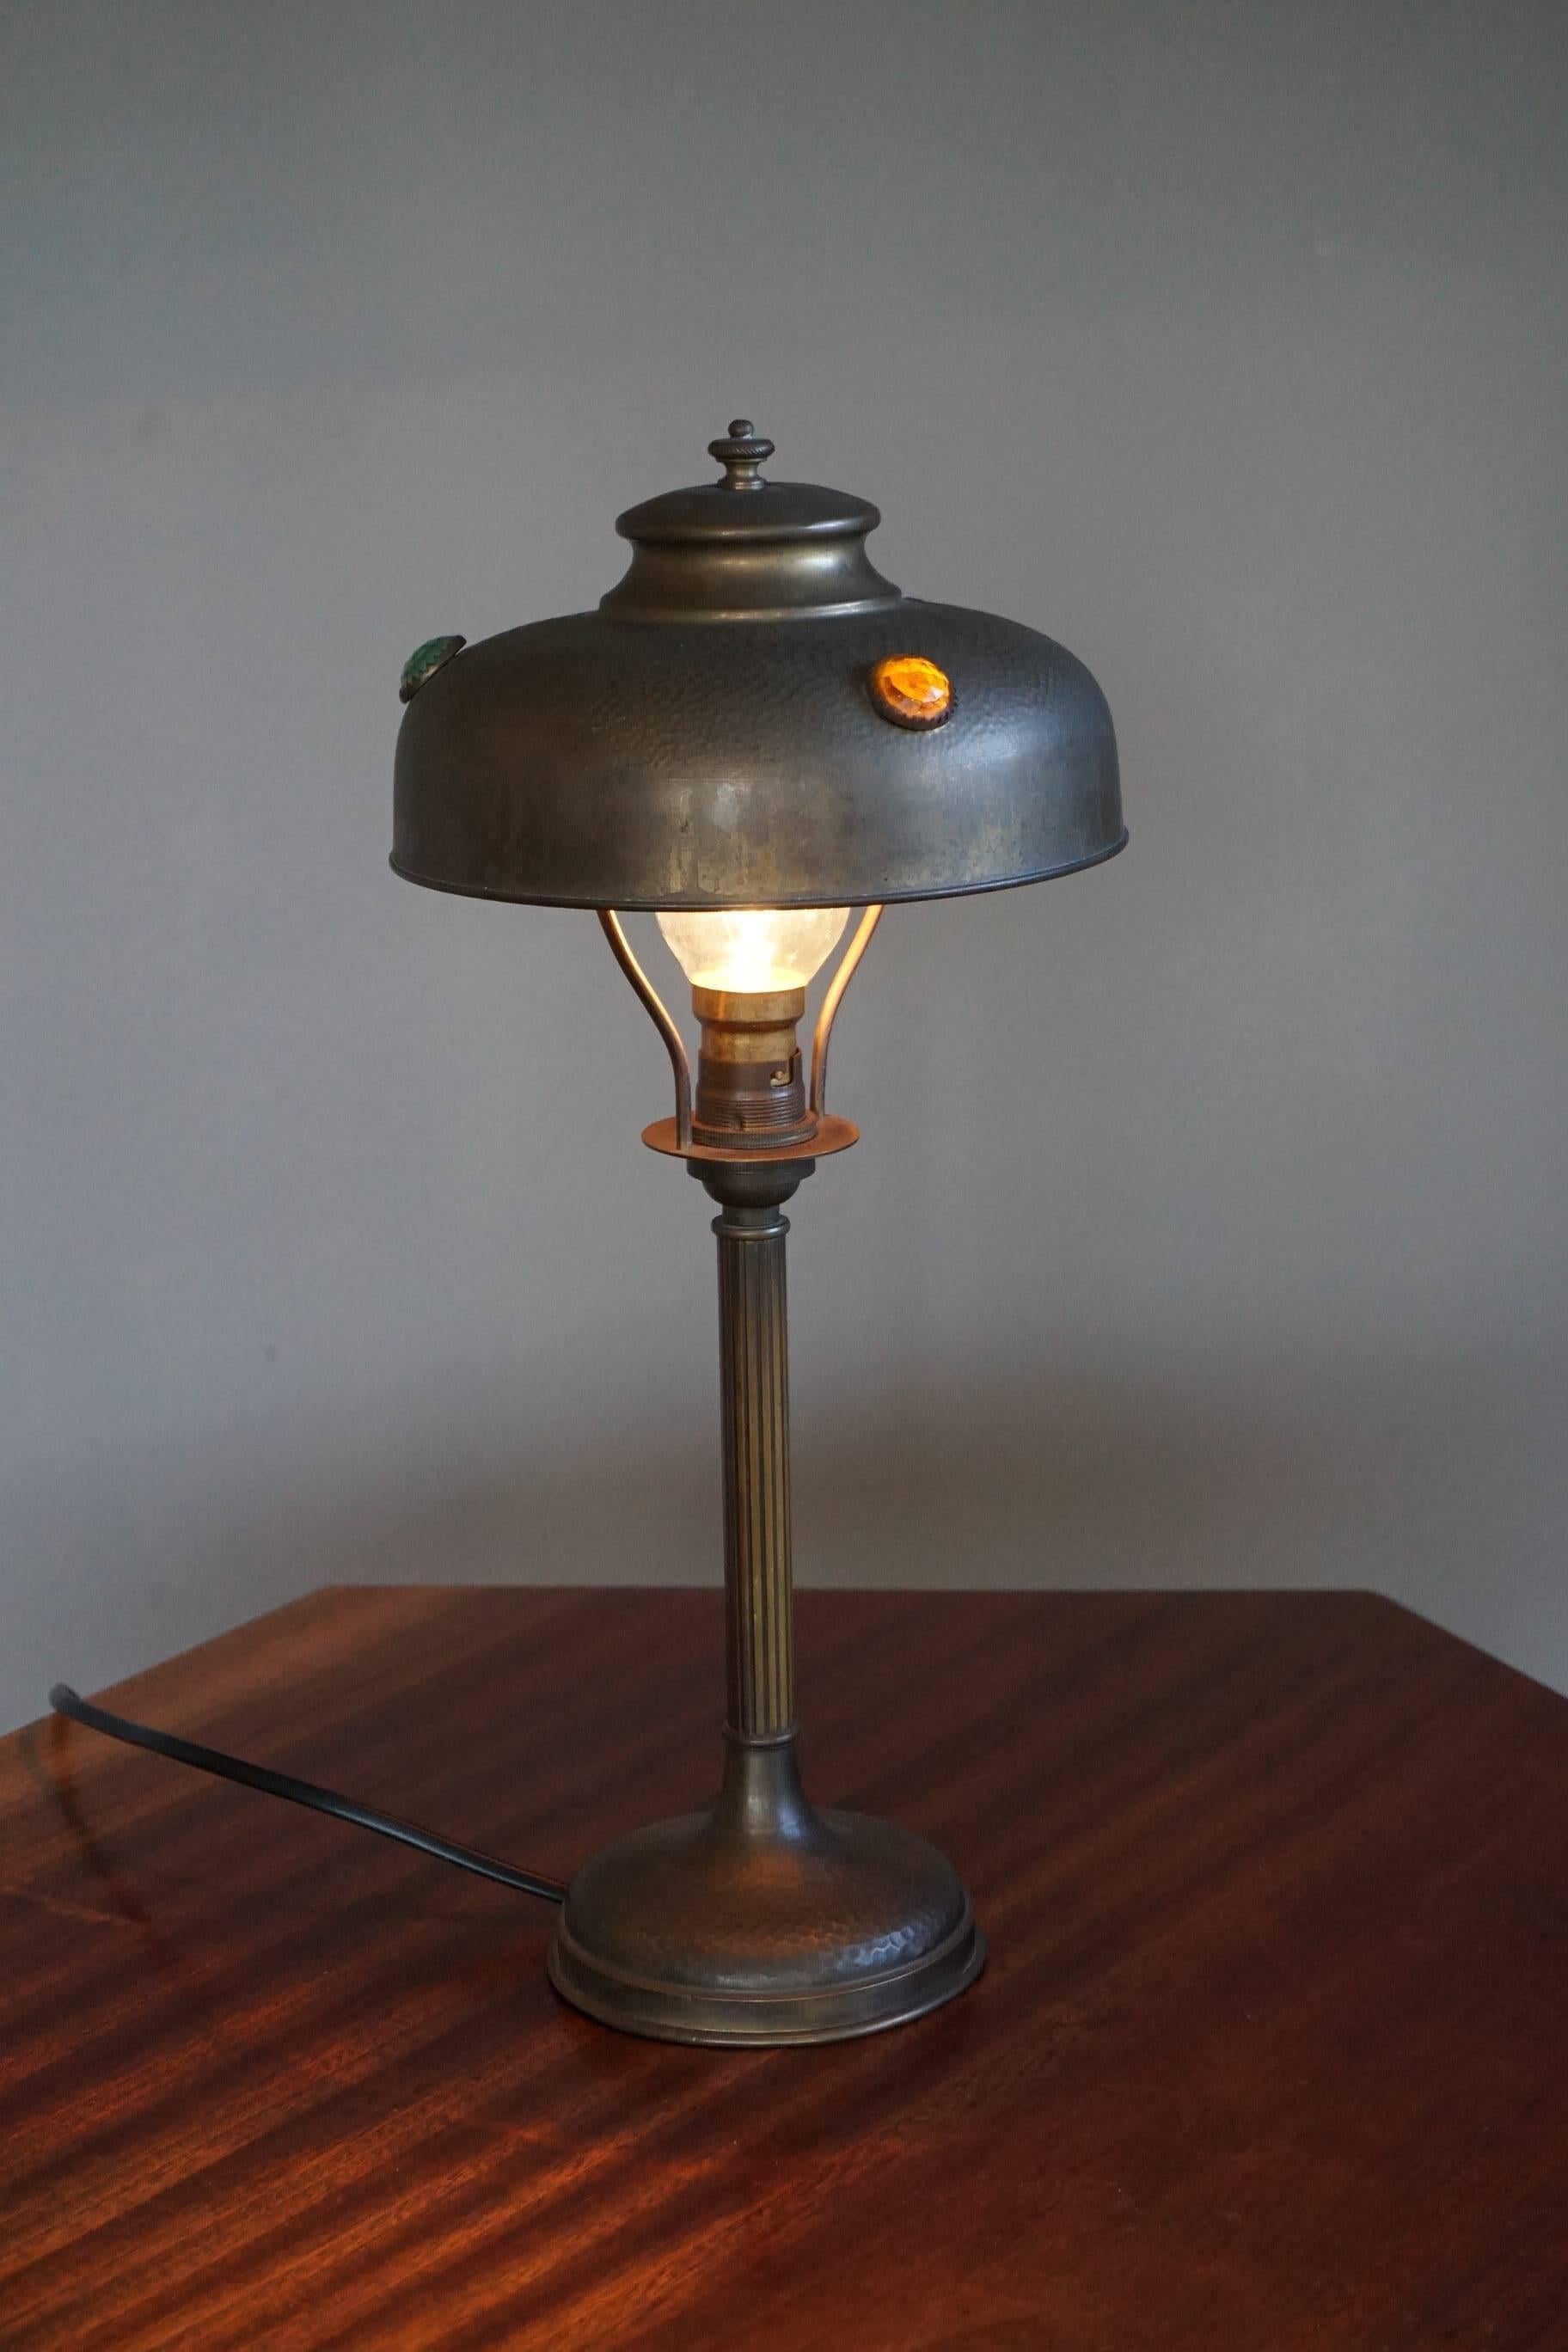 Seltene und sehr stilvolle Arts & Crafts Lampe.

Wenn Sie ein Liebhaber der Beleuchtung des frühen 20. Jahrhunderts im Allgemeinen und des Arts & Crafts-Stils im Besonderen sind, dann könnte diese antike Lampe genau das Richtige für Sie sein. Aus